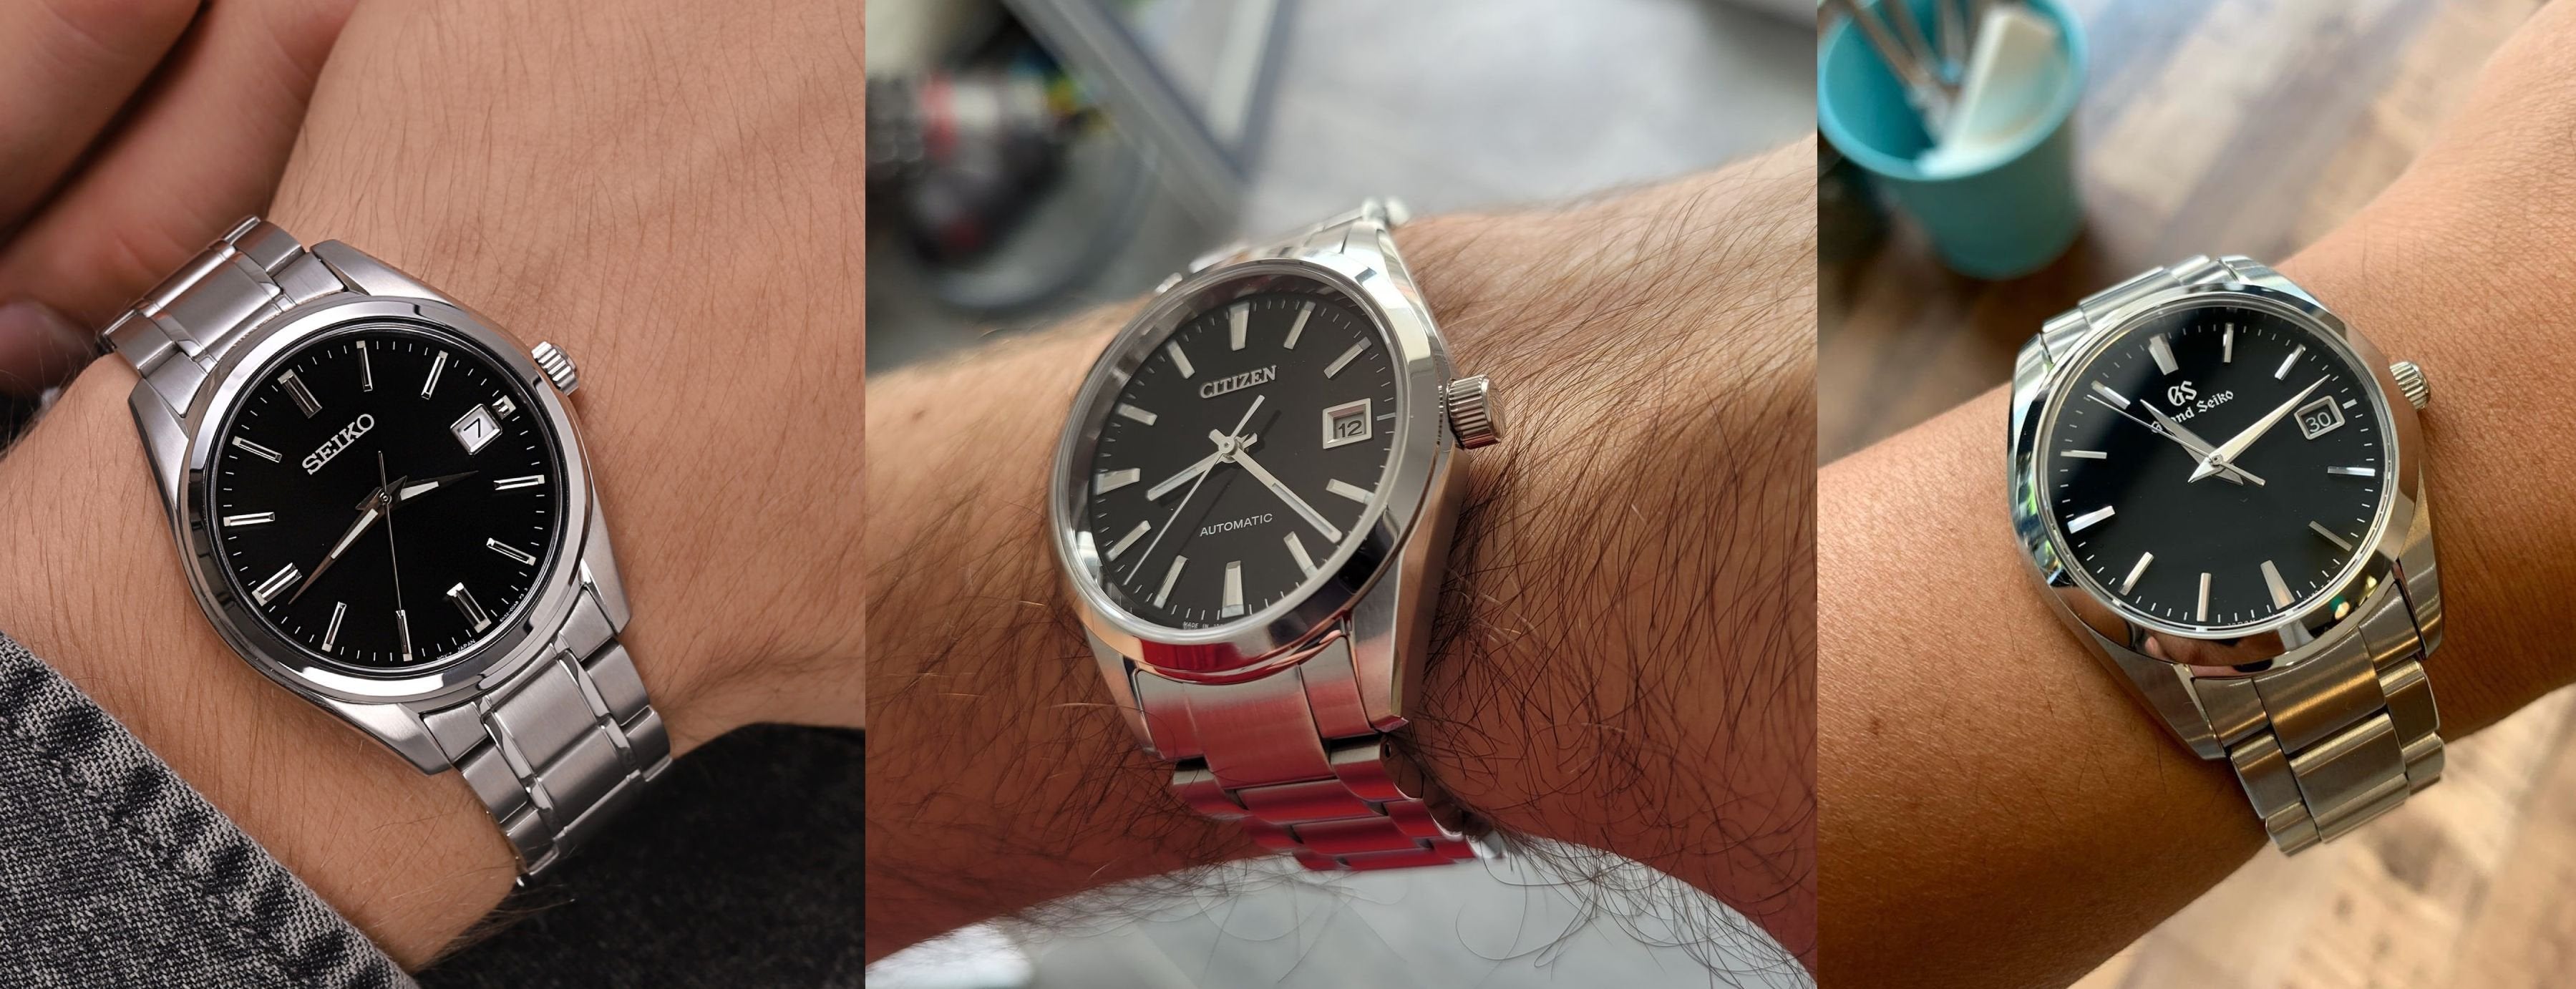 Please, help me choose between these 3 watches | WatchUSeek Watch Forums